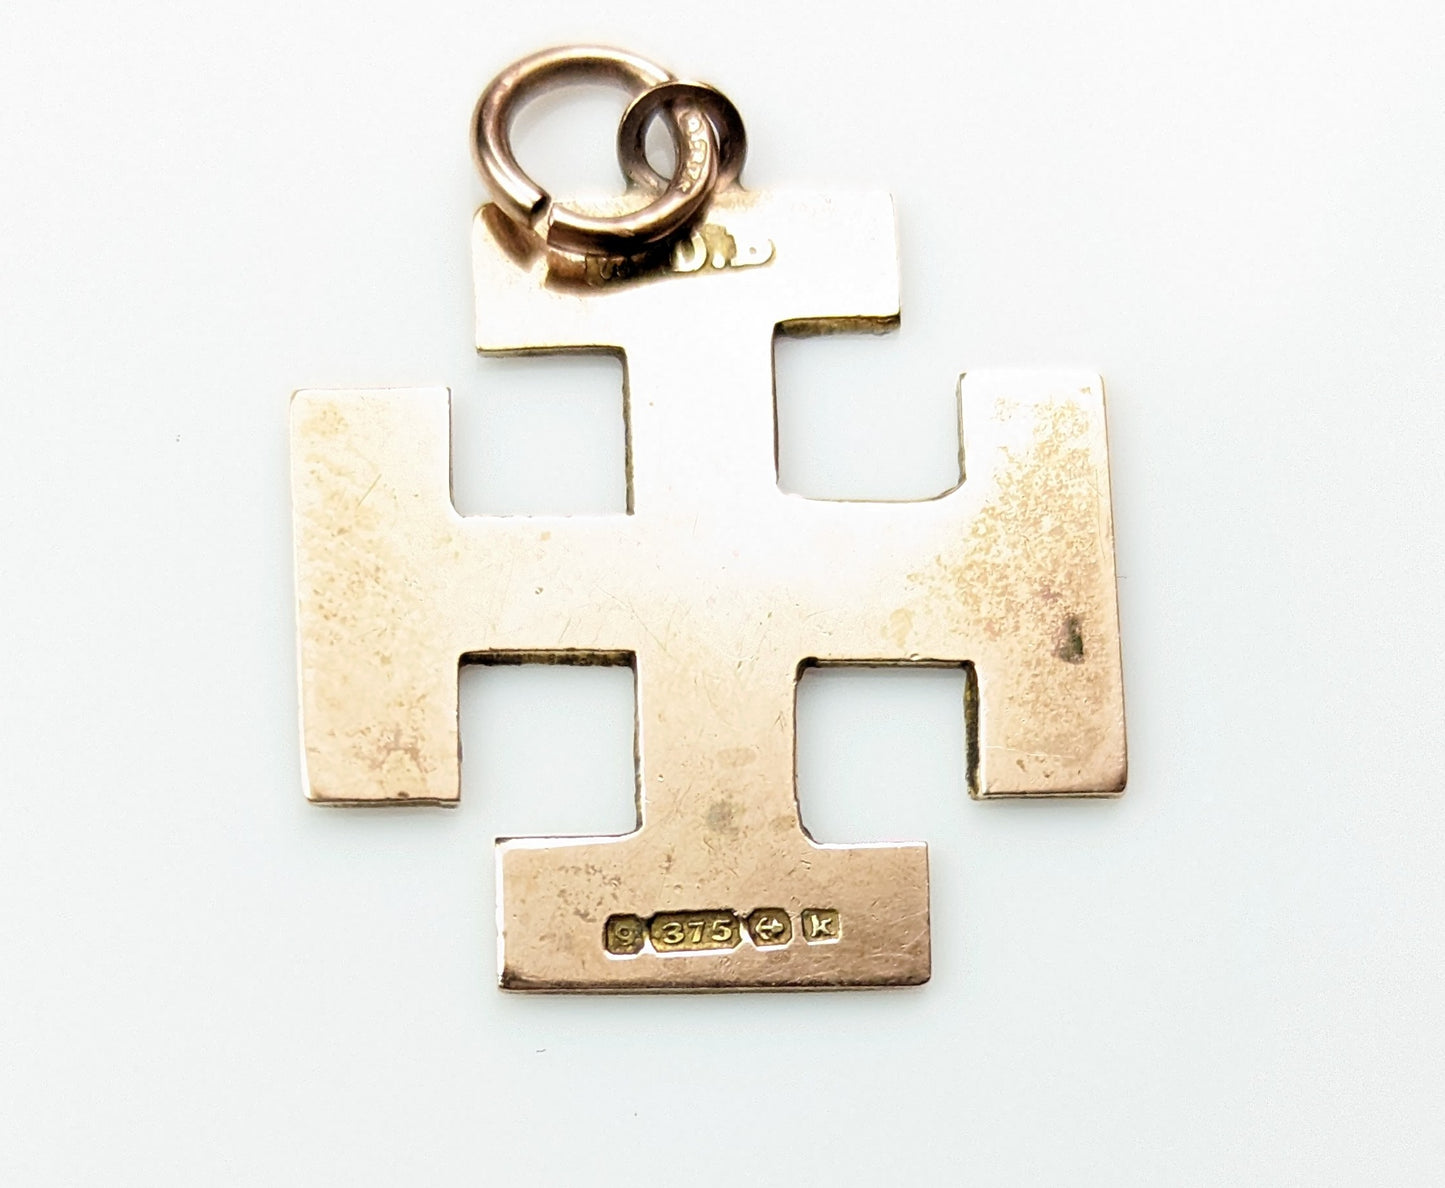 Antique 9k gold Jerusalem cross pendant, engraved